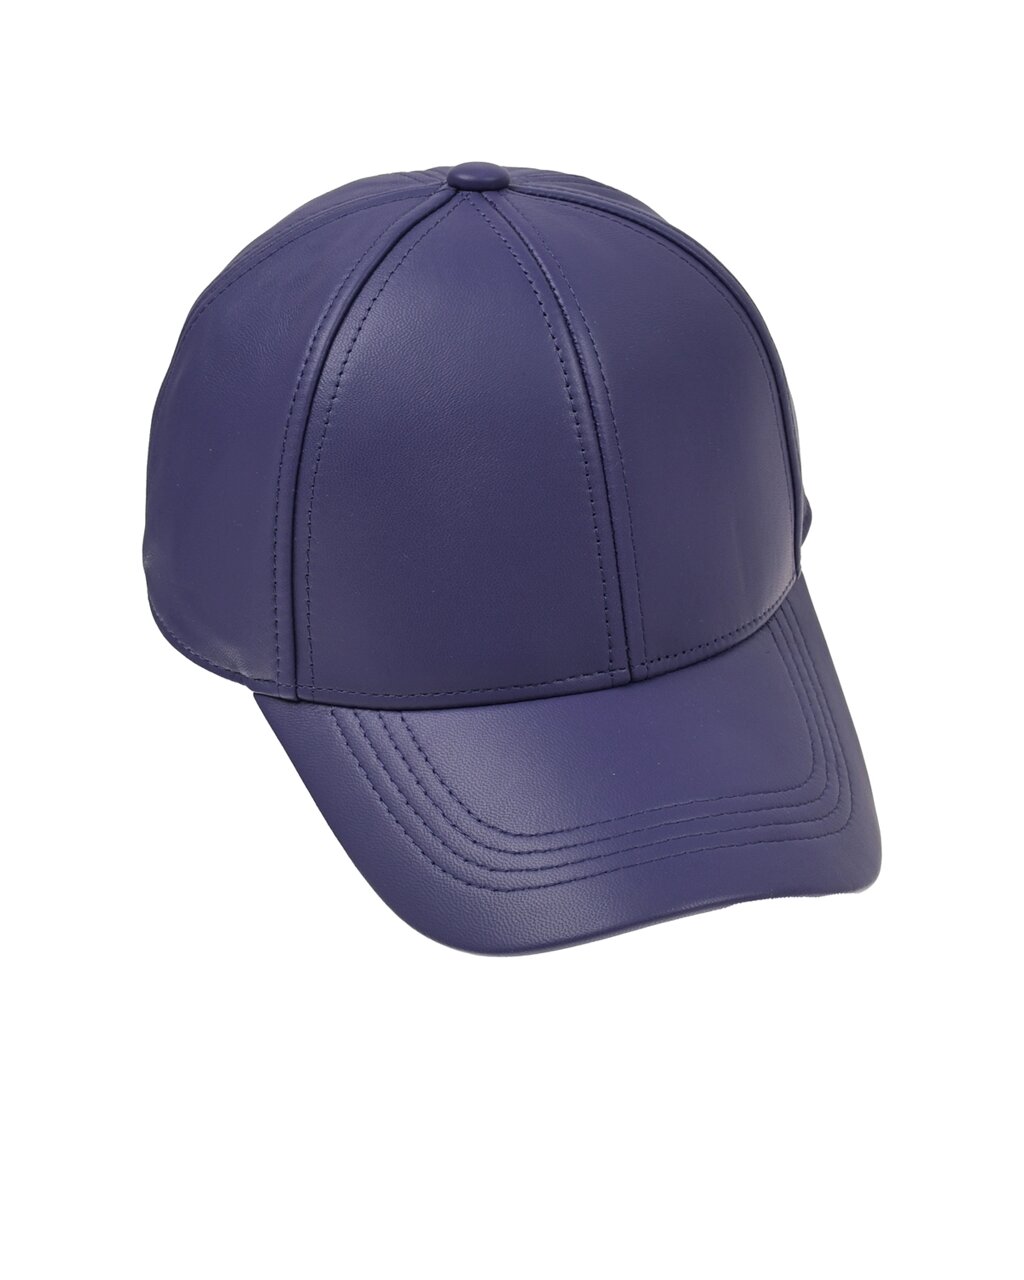 Фиолетовая кепка из натуральной кожи Yves Salomon от компании Admi - фото 1